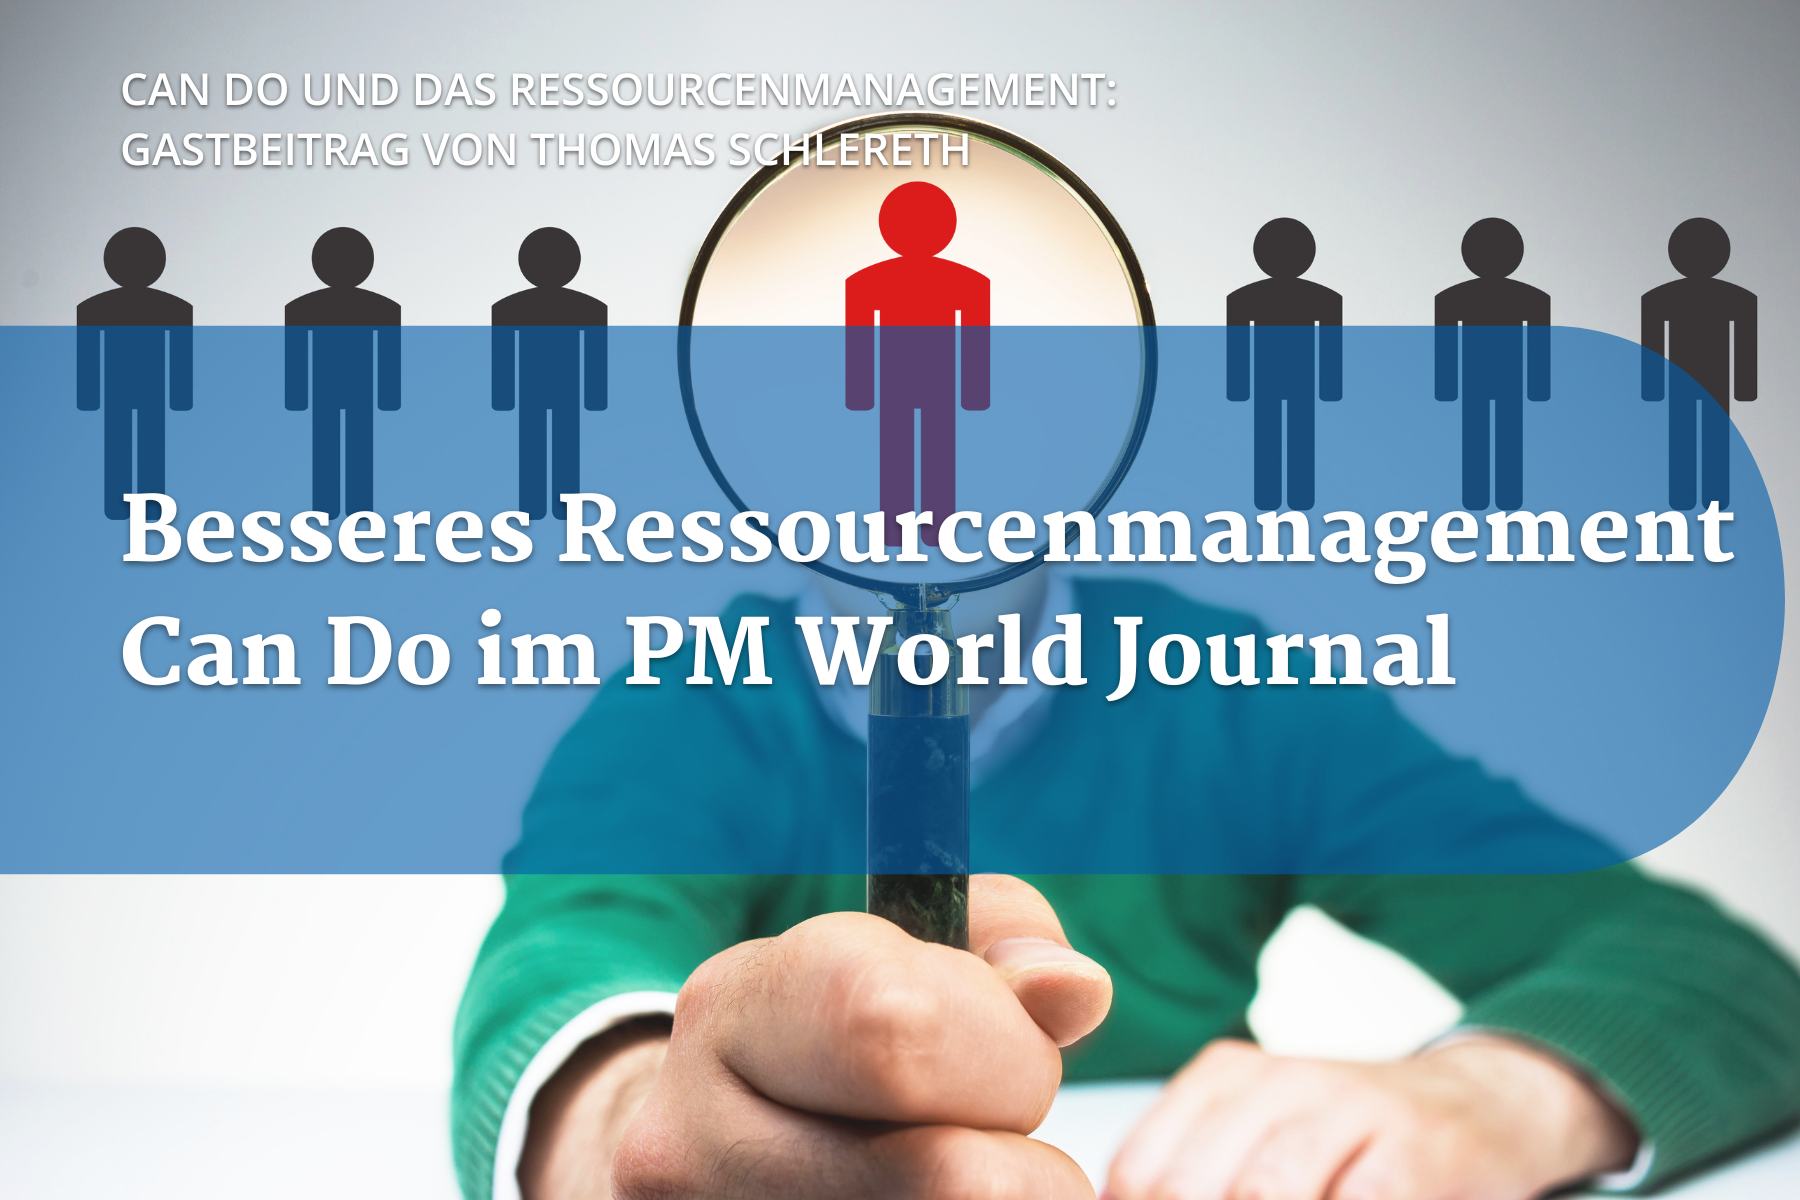 Besseres ressourcenmanagement: Can Do im PM World Journal